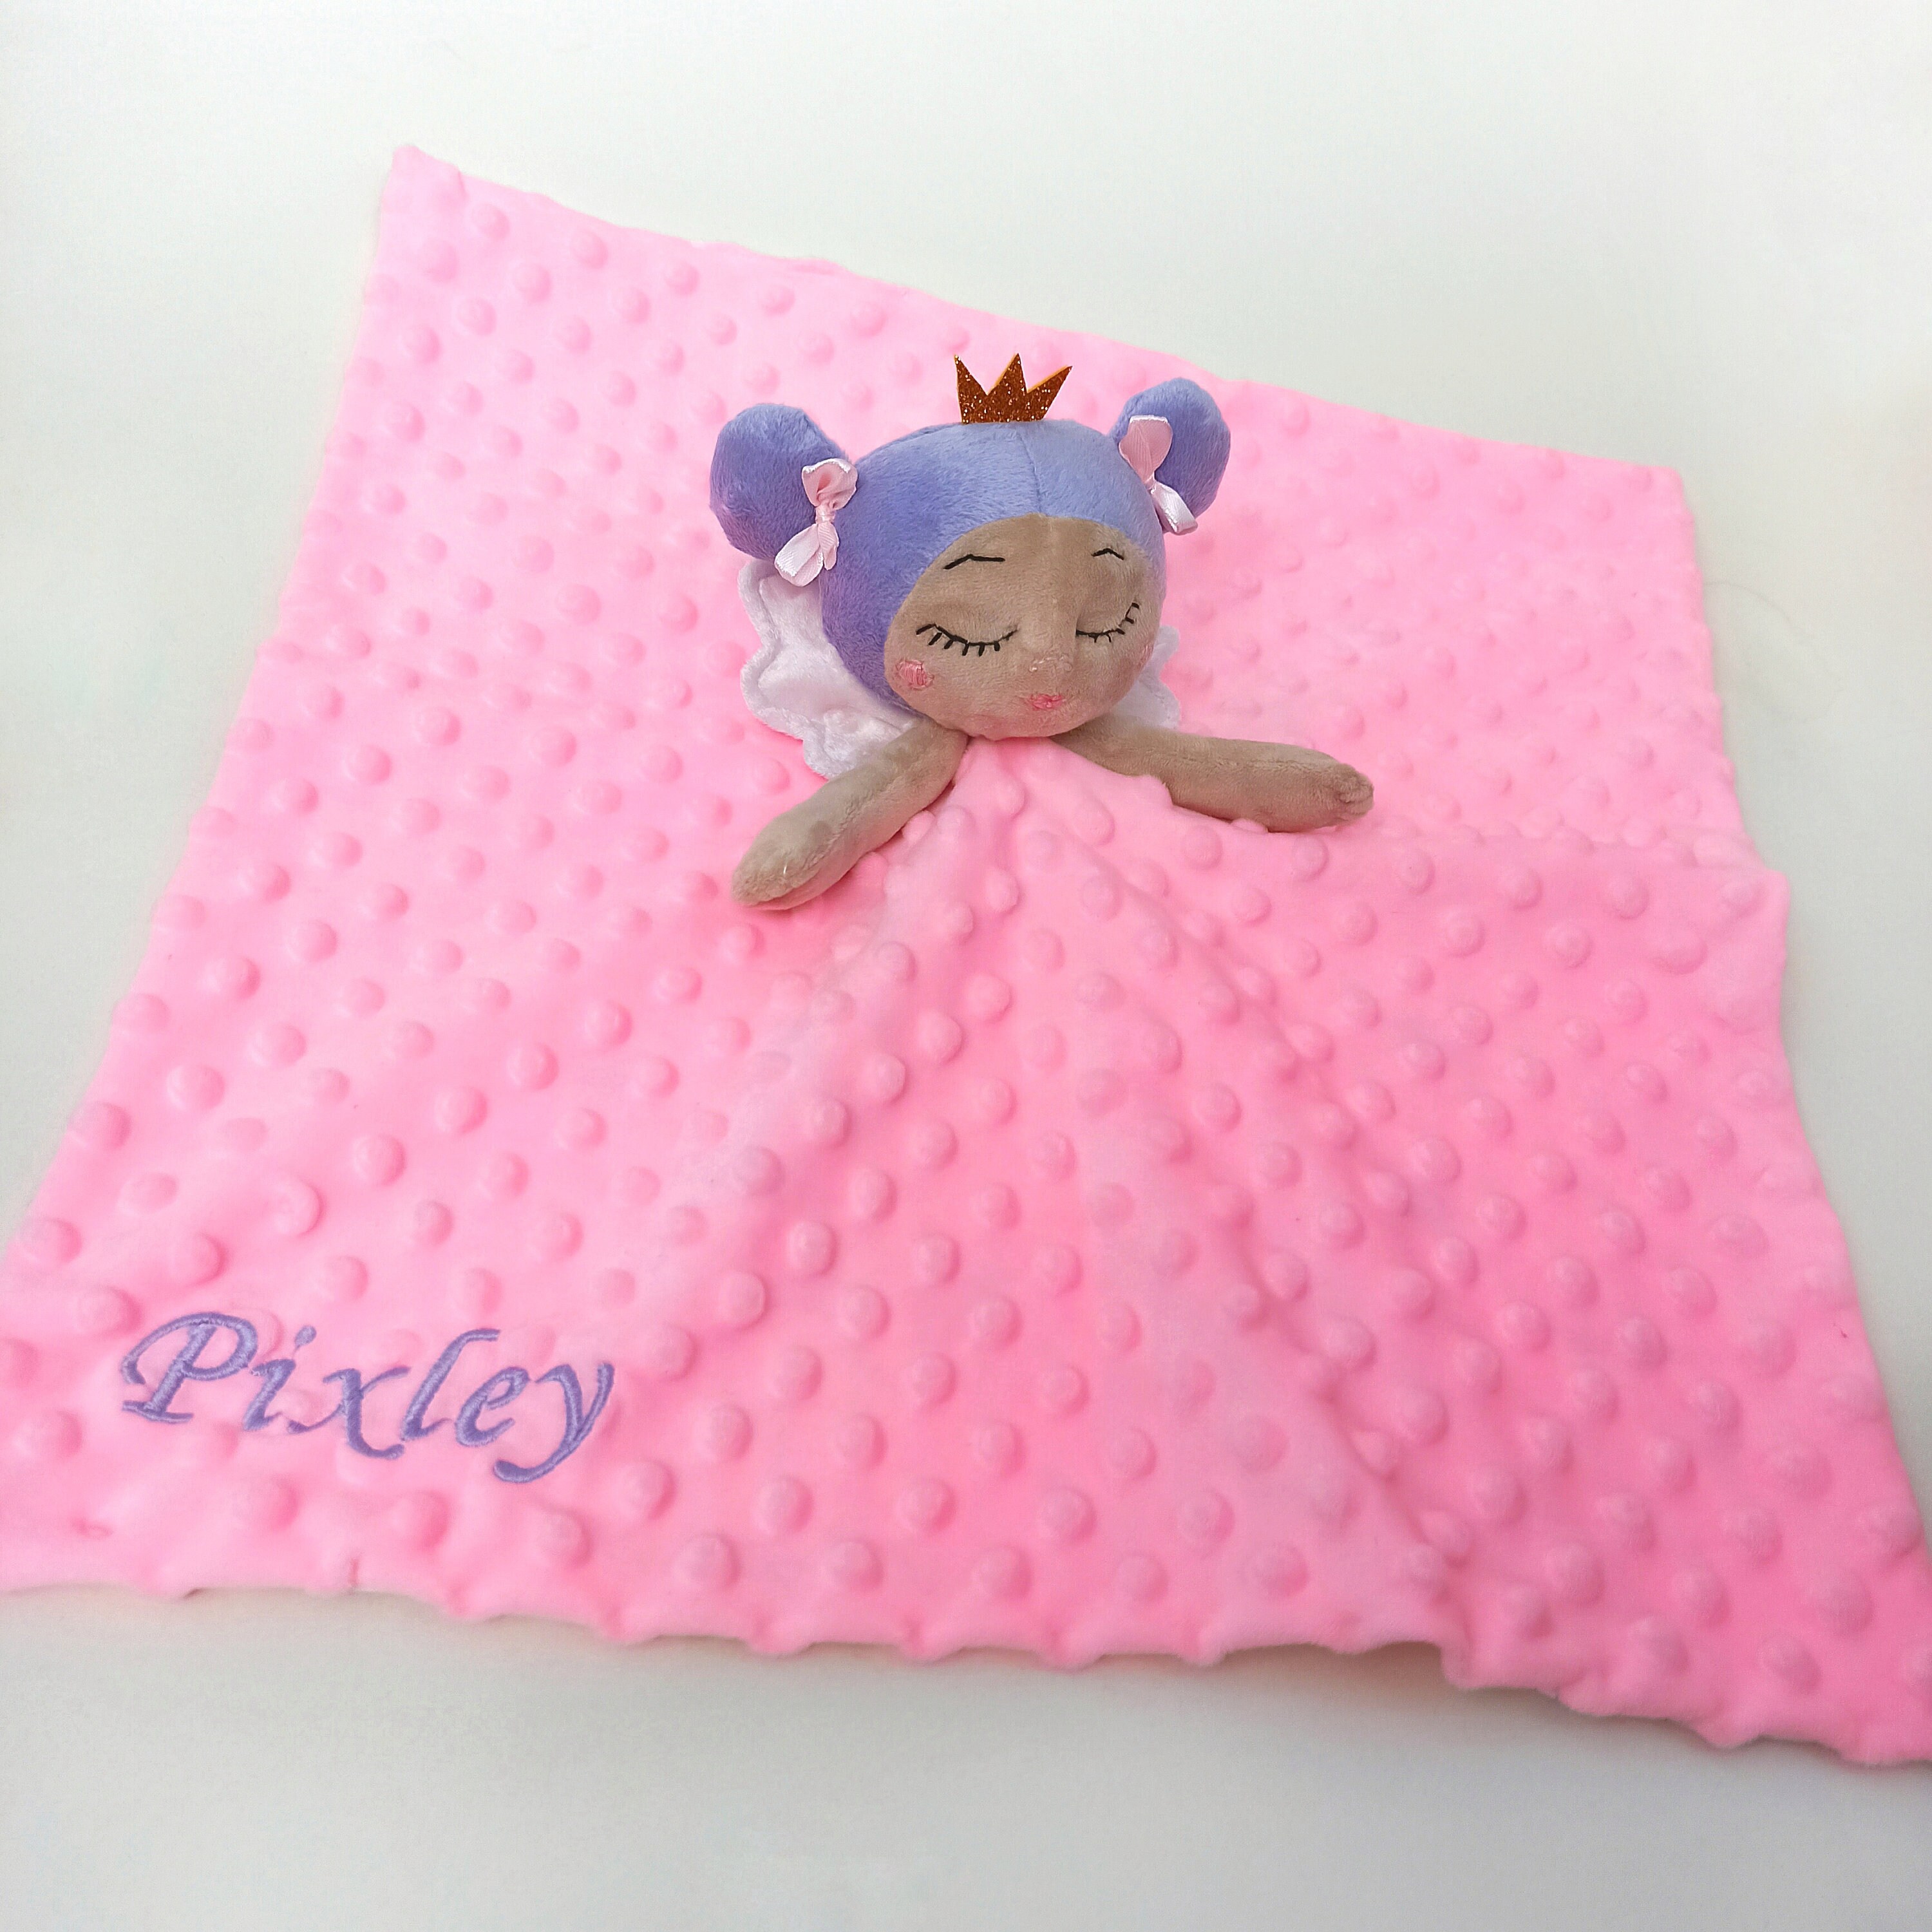 Fairy loveys for baby girl Lovey doll for babies | Etsy